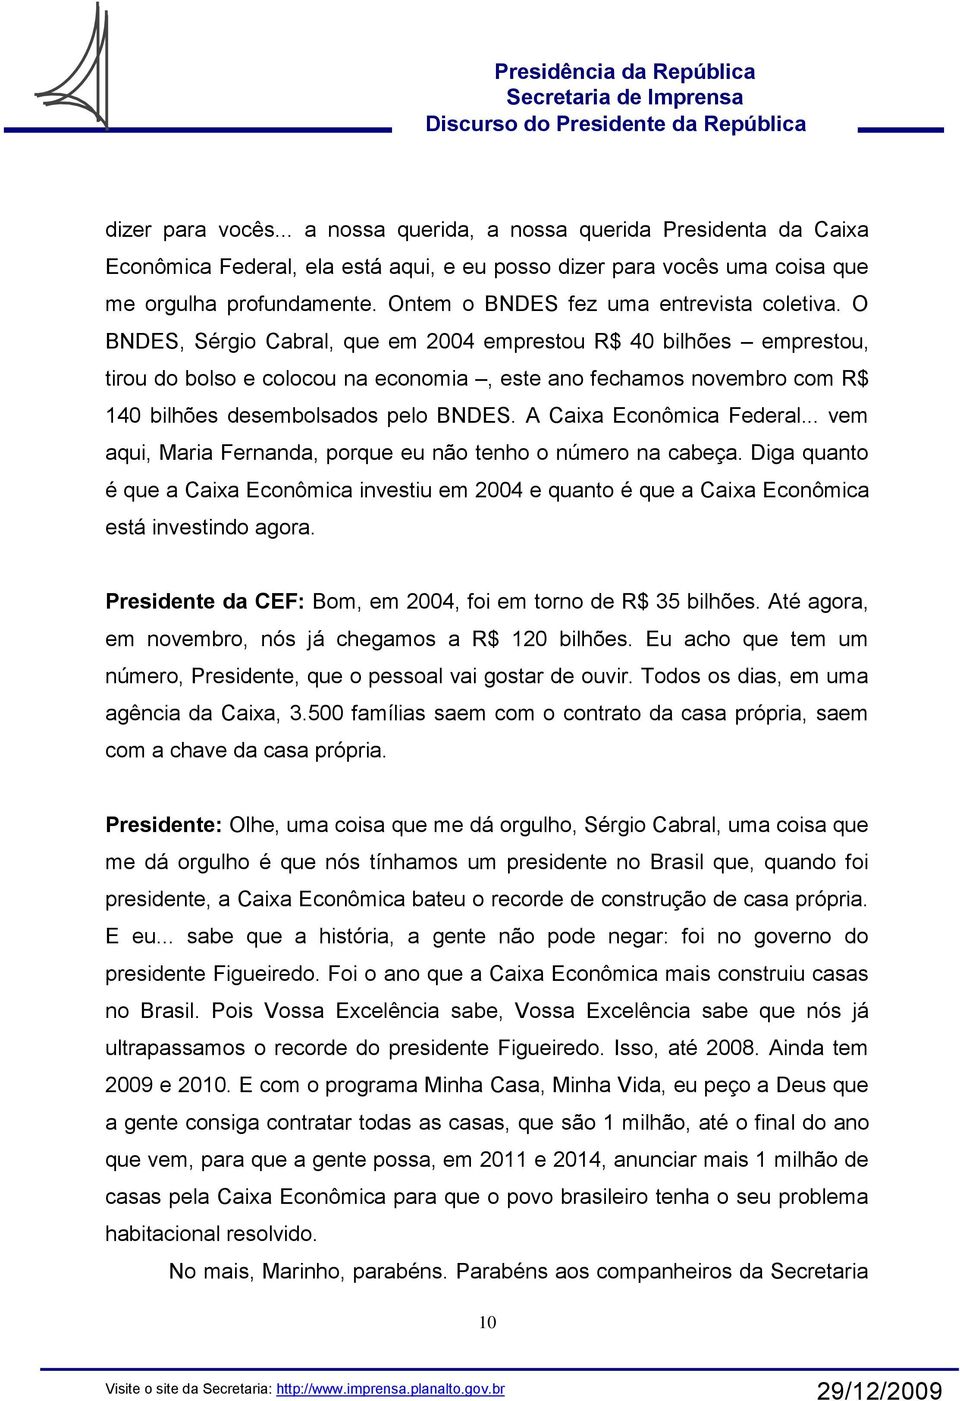 O BNDES, Sérgio Cabral, que em 2004 emprestou R$ 40 bilhões emprestou, tirou do bolso e colocou na economia, este ano fechamos novembro com R$ 140 bilhões desembolsados pelo BNDES.